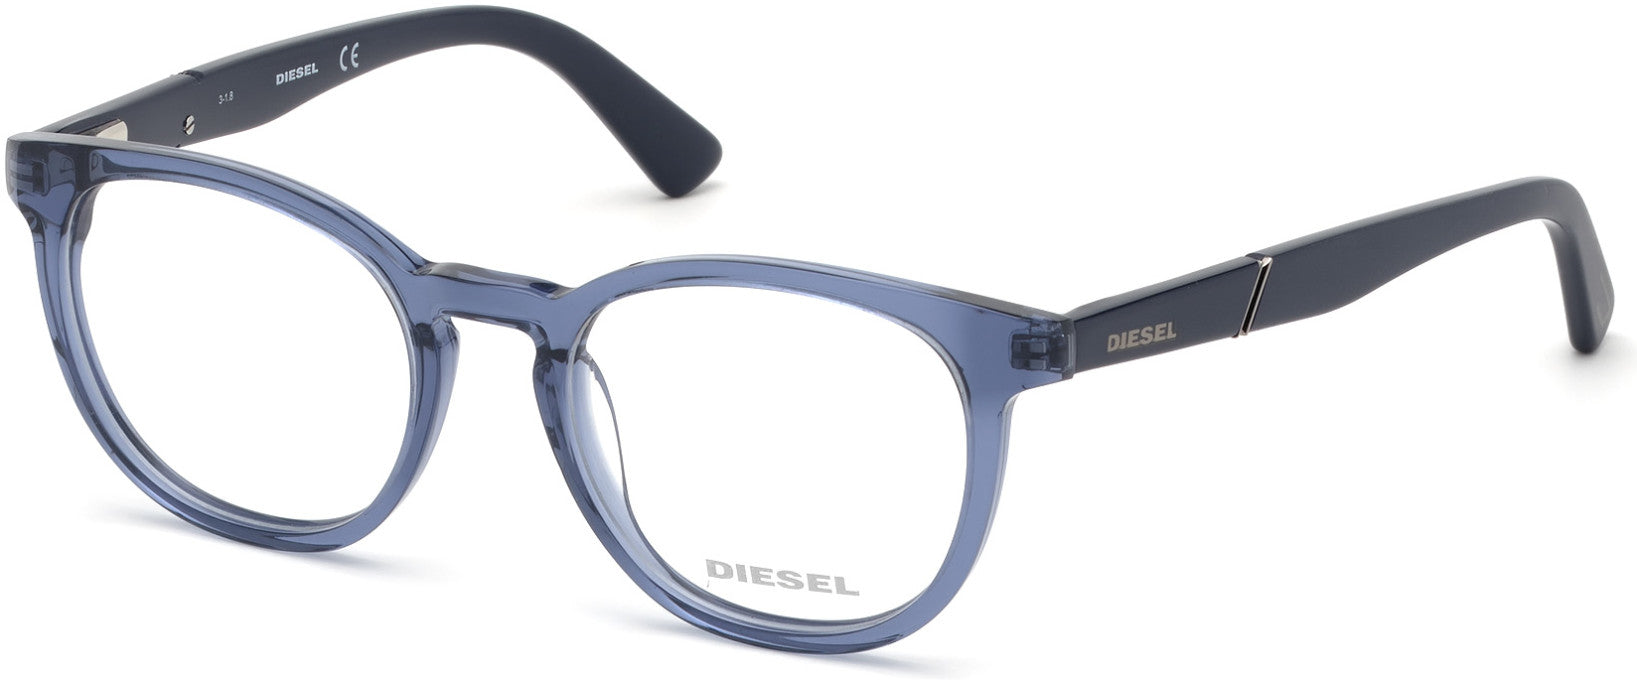 Diesel DL5295 Round Eyeglasses 090-090 - Shiny Blue